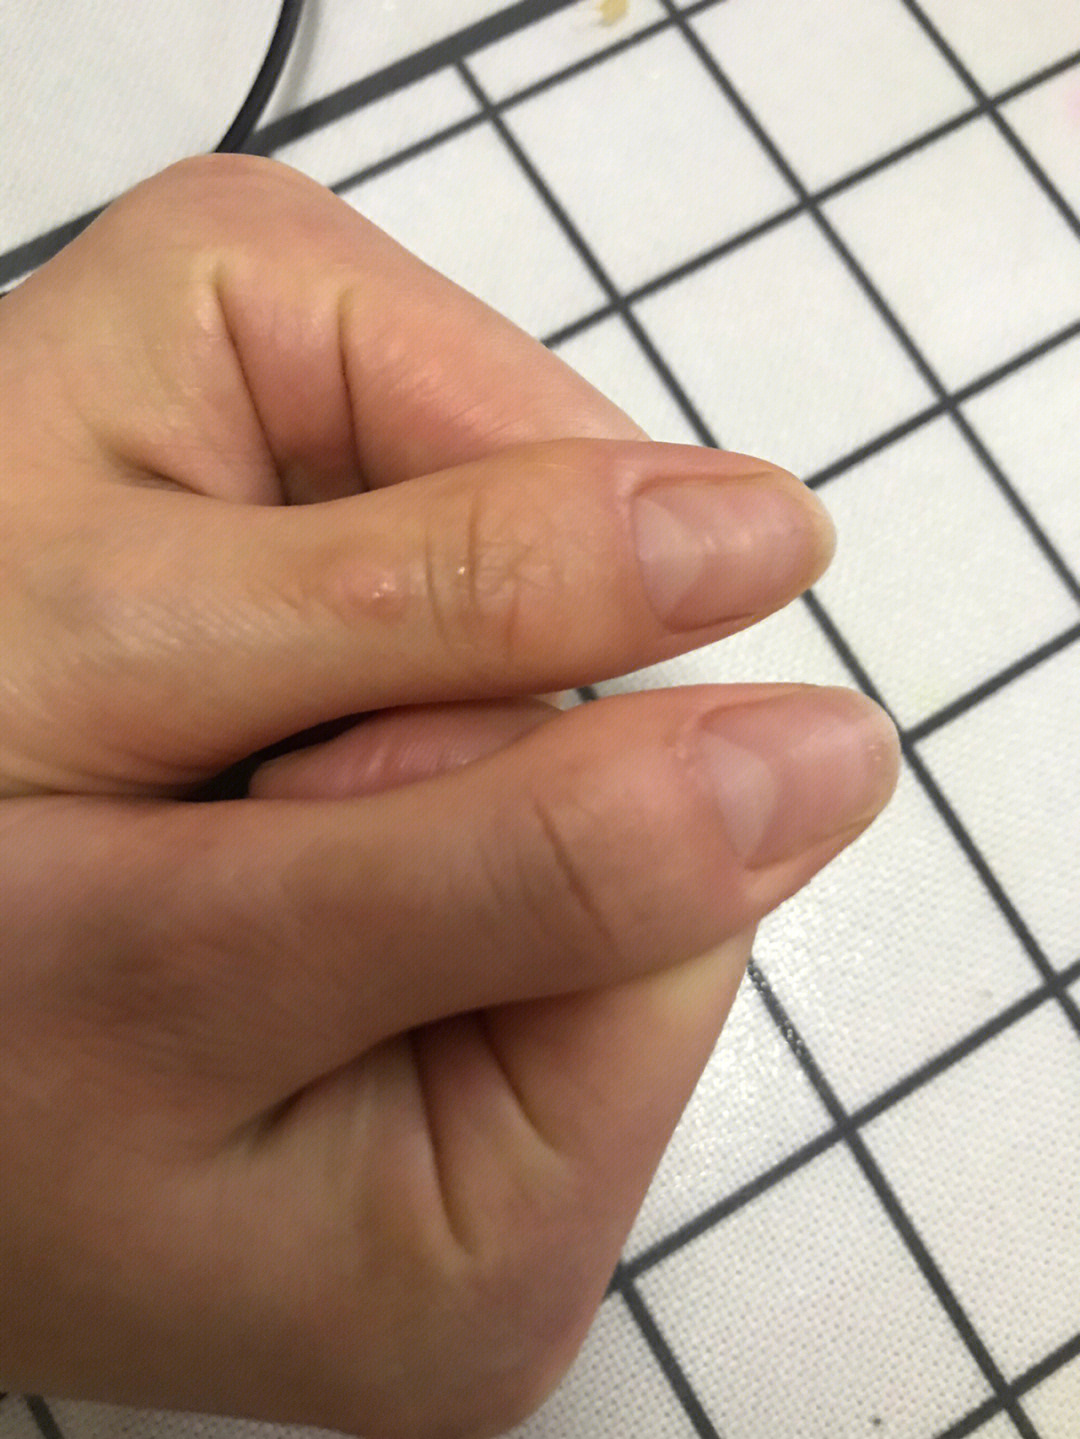 大拇指指甲分层图片图片